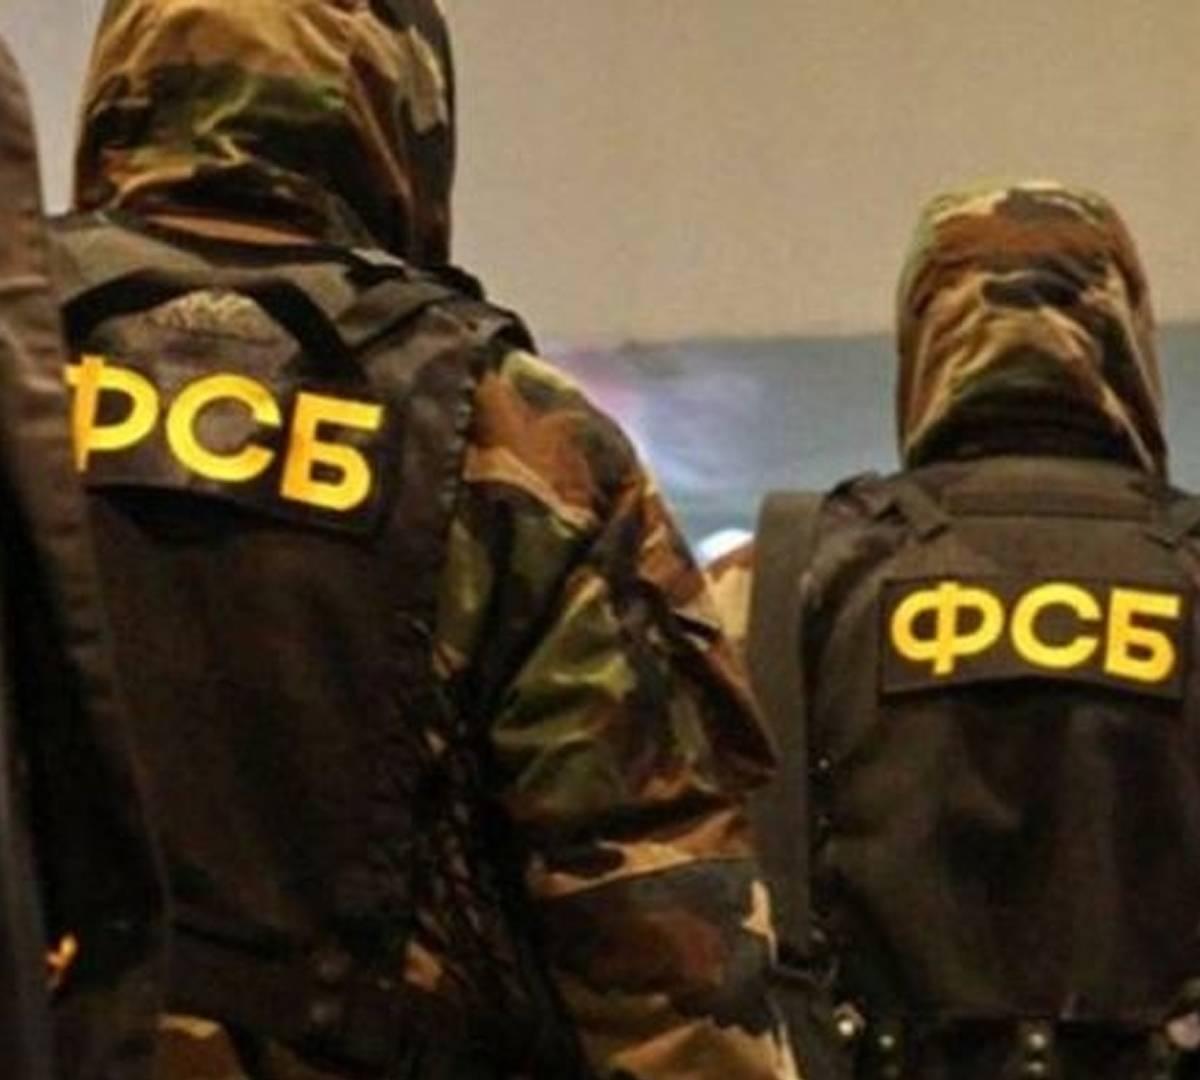 ФСБ, возможно, напало на сектантский след керченского убийцы